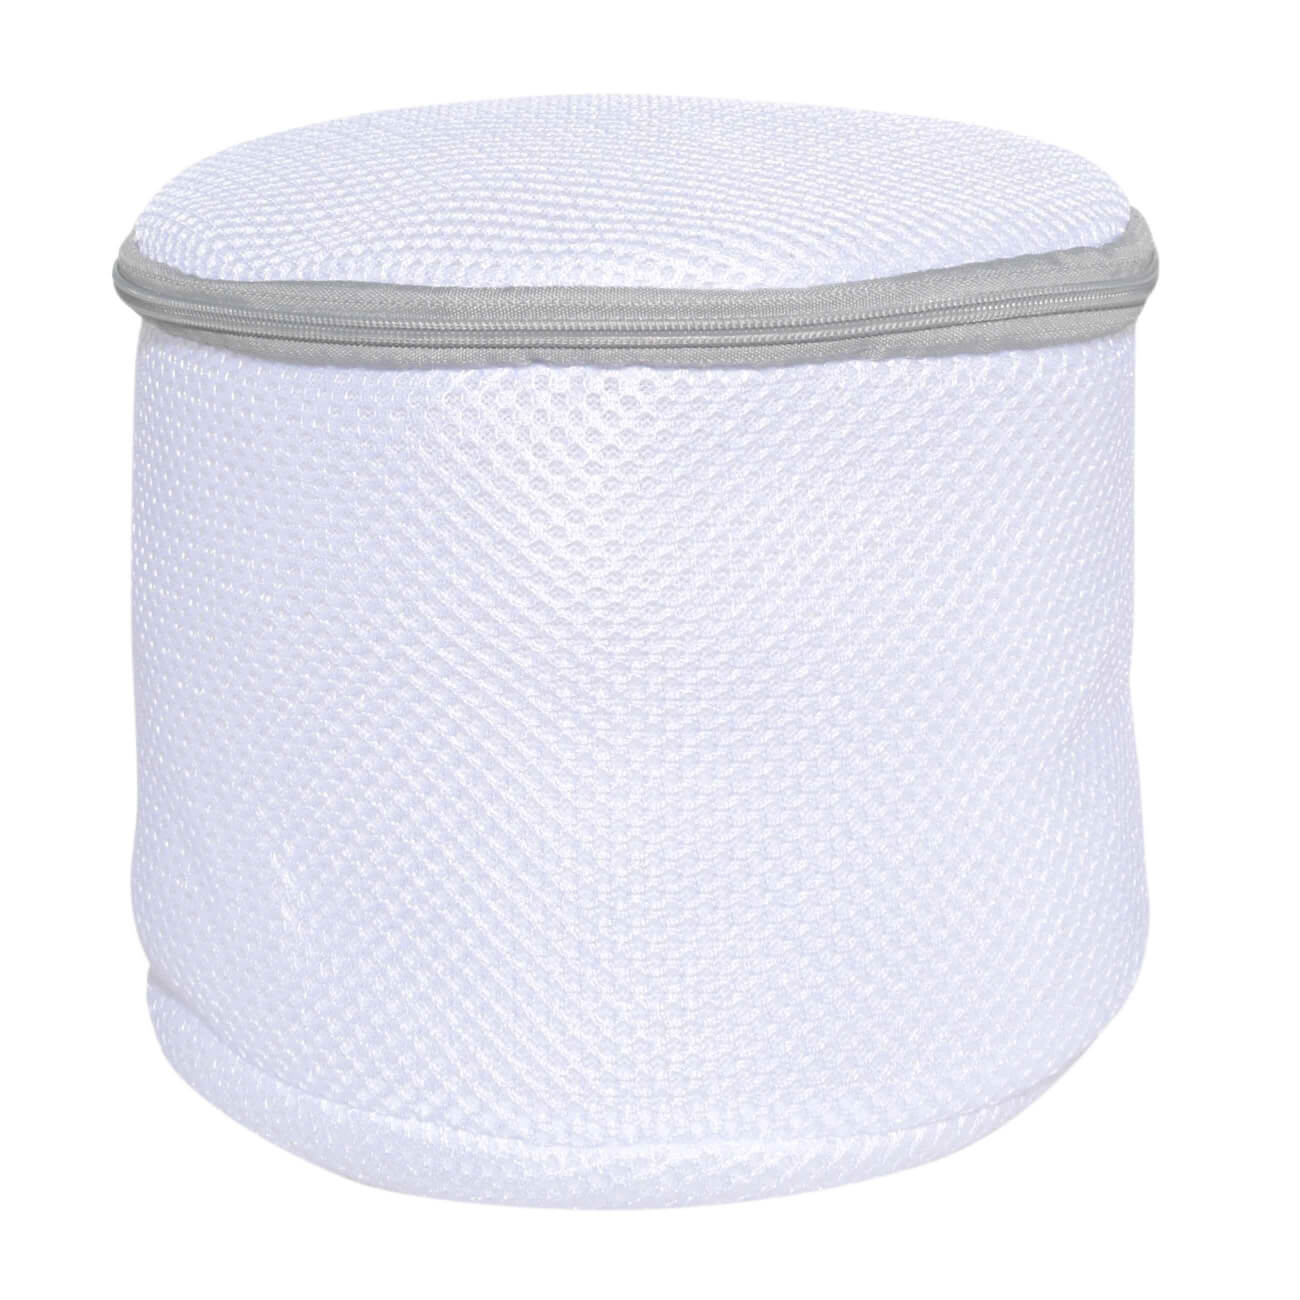 Мешок для стирки бюстгалтеров, 17х15 см, с защитой, полиэстер, бело-серый, Safety